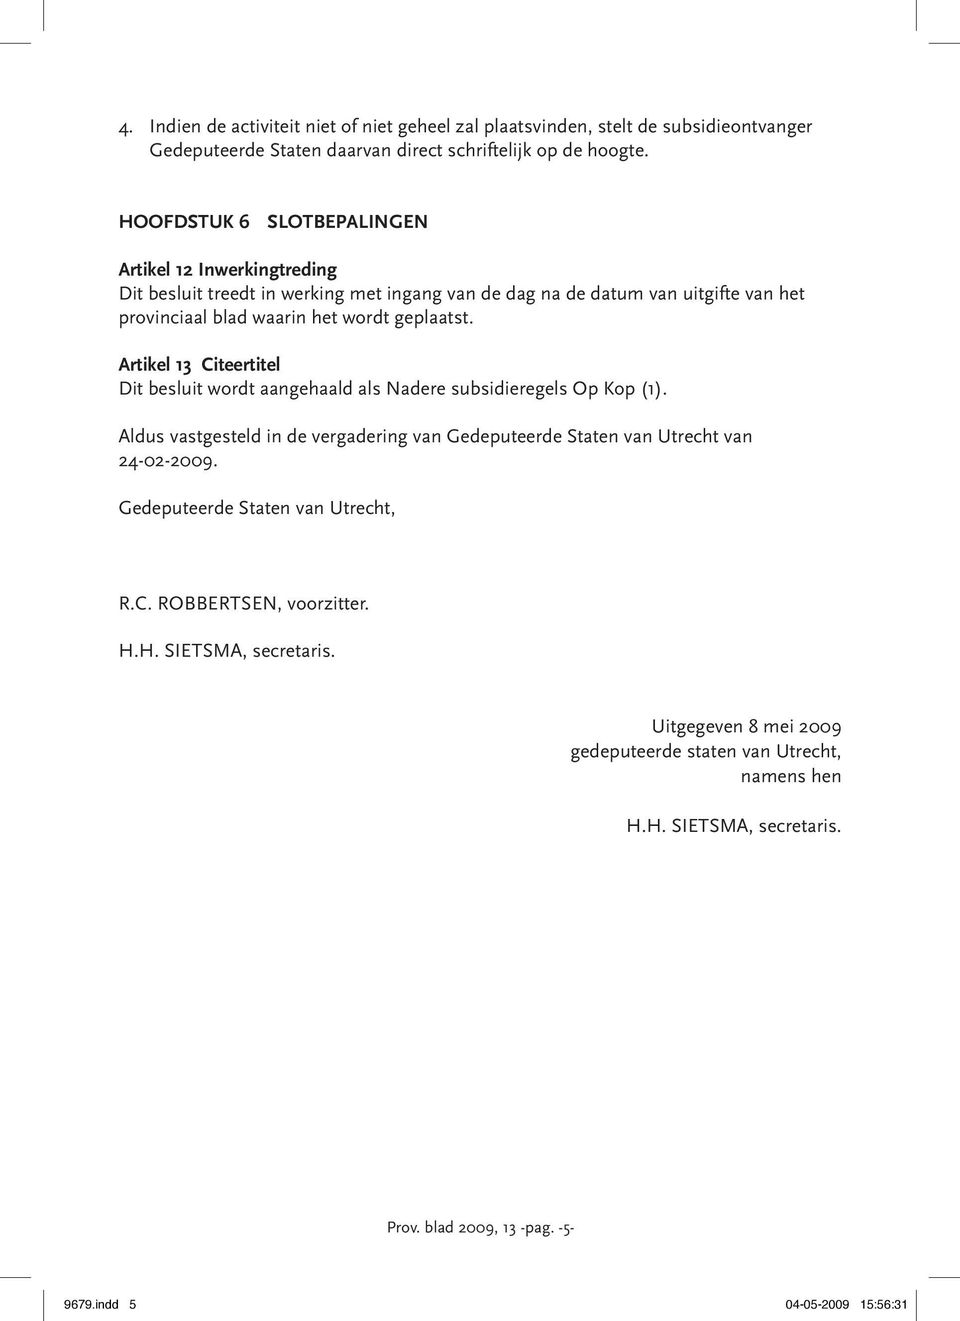 Artikel 13 Citeertitel Dit besluit wordt aangehaald als Nadere subsidieregels Op Kop (1). Aldus vastgesteld in de vergadering van Gedeputeerde Staten van Utrecht van 24-02-2009.